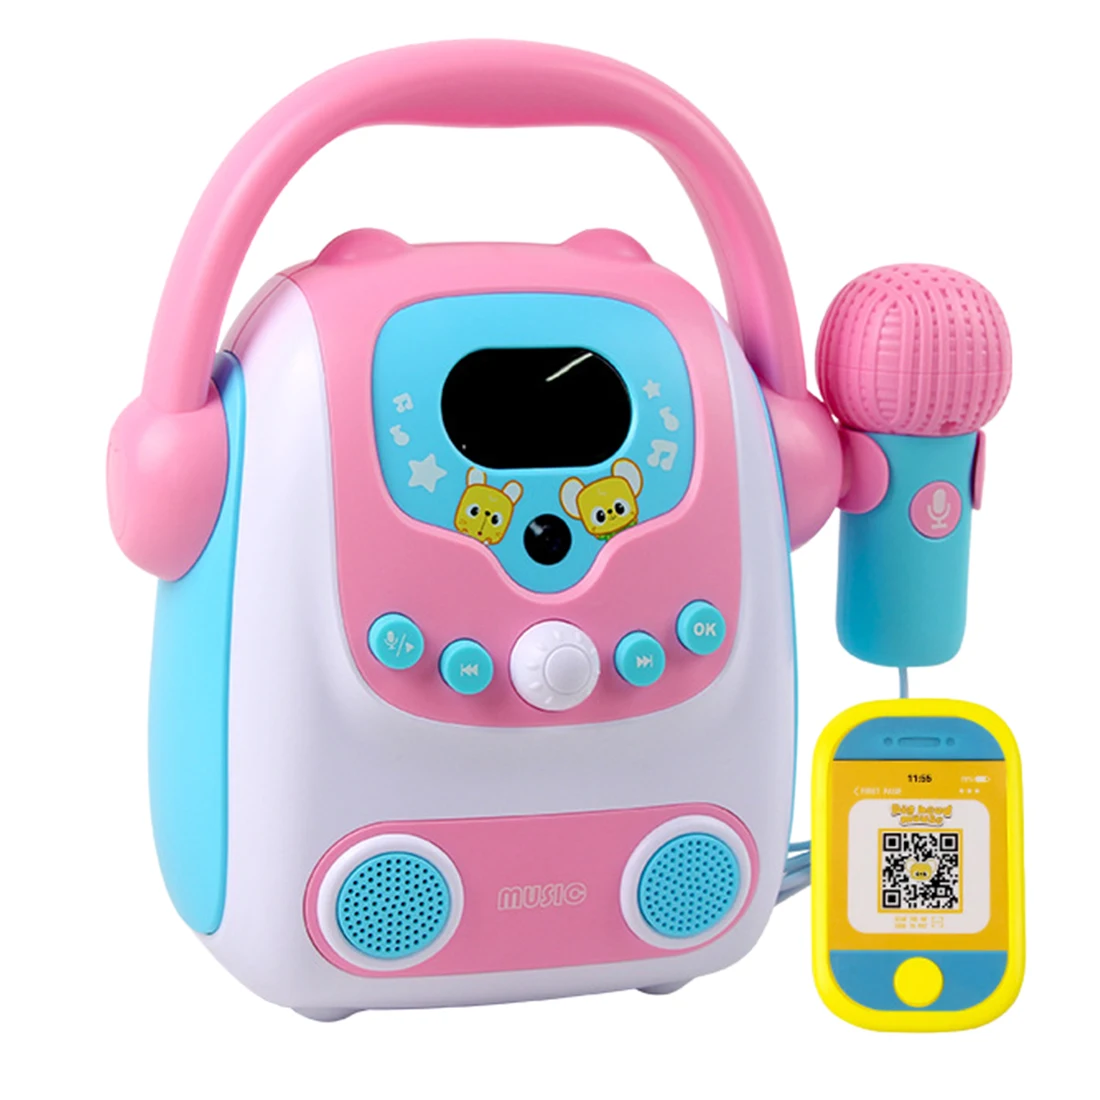 저렴한 마이크 가라오케 블루투스 스피커 장난감 휴대용 가라오케 기계 발달 음악 교육 완구 어린이 선물-핑크 블루